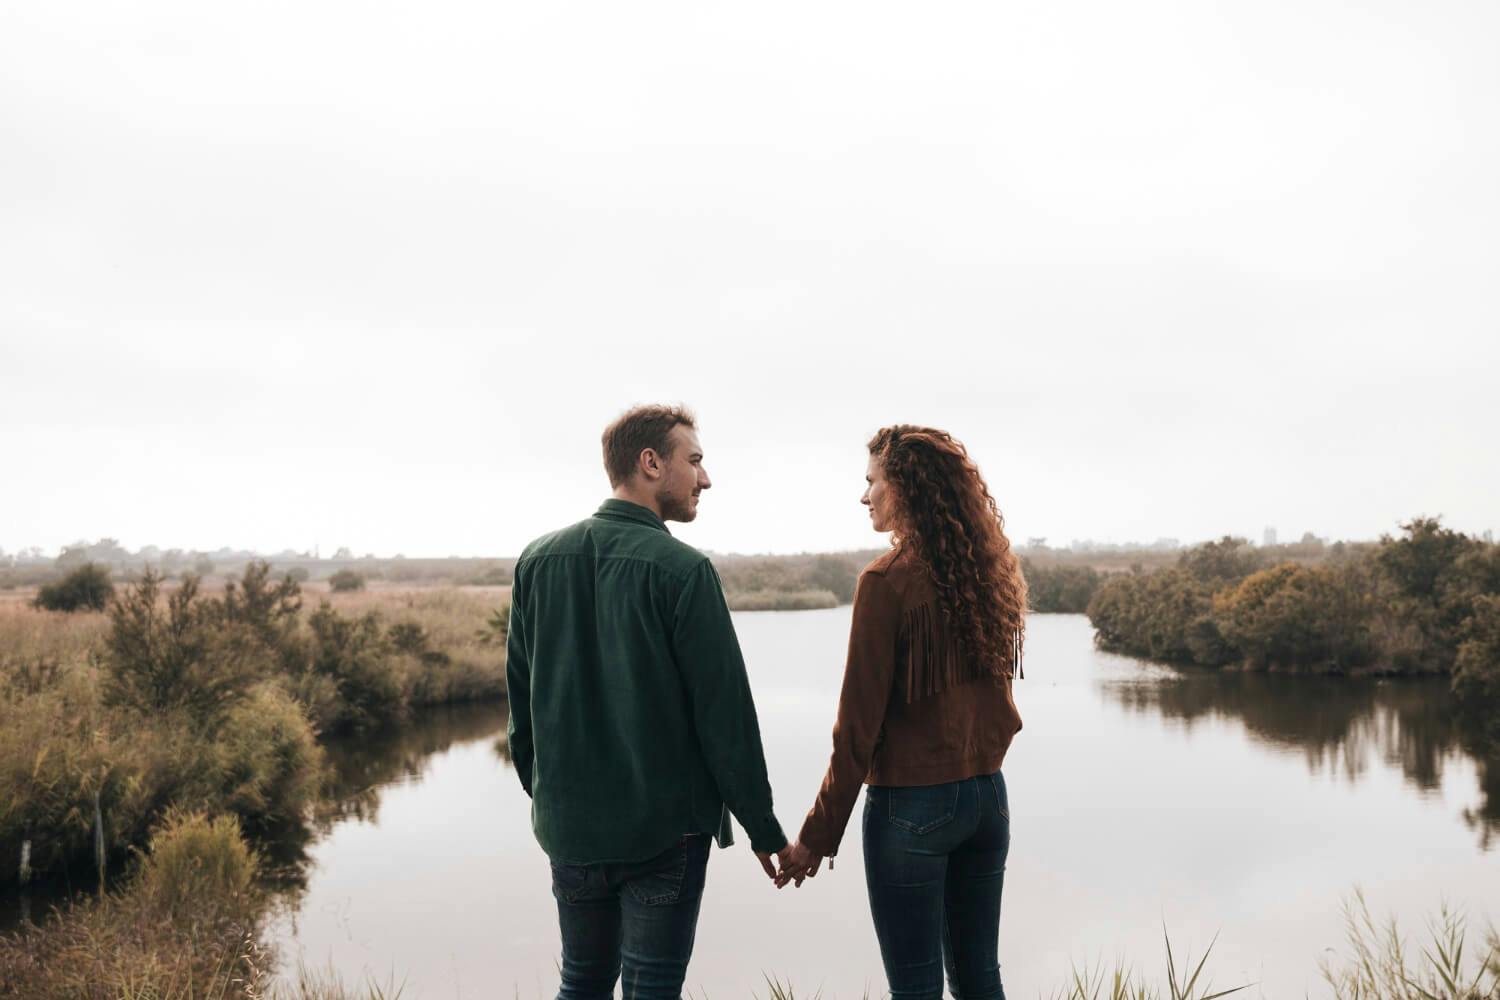 Una pareja tomados de la mano mirando el horizonte, simbolizando la búsqueda de superación de la dependencia emocional en su relación.